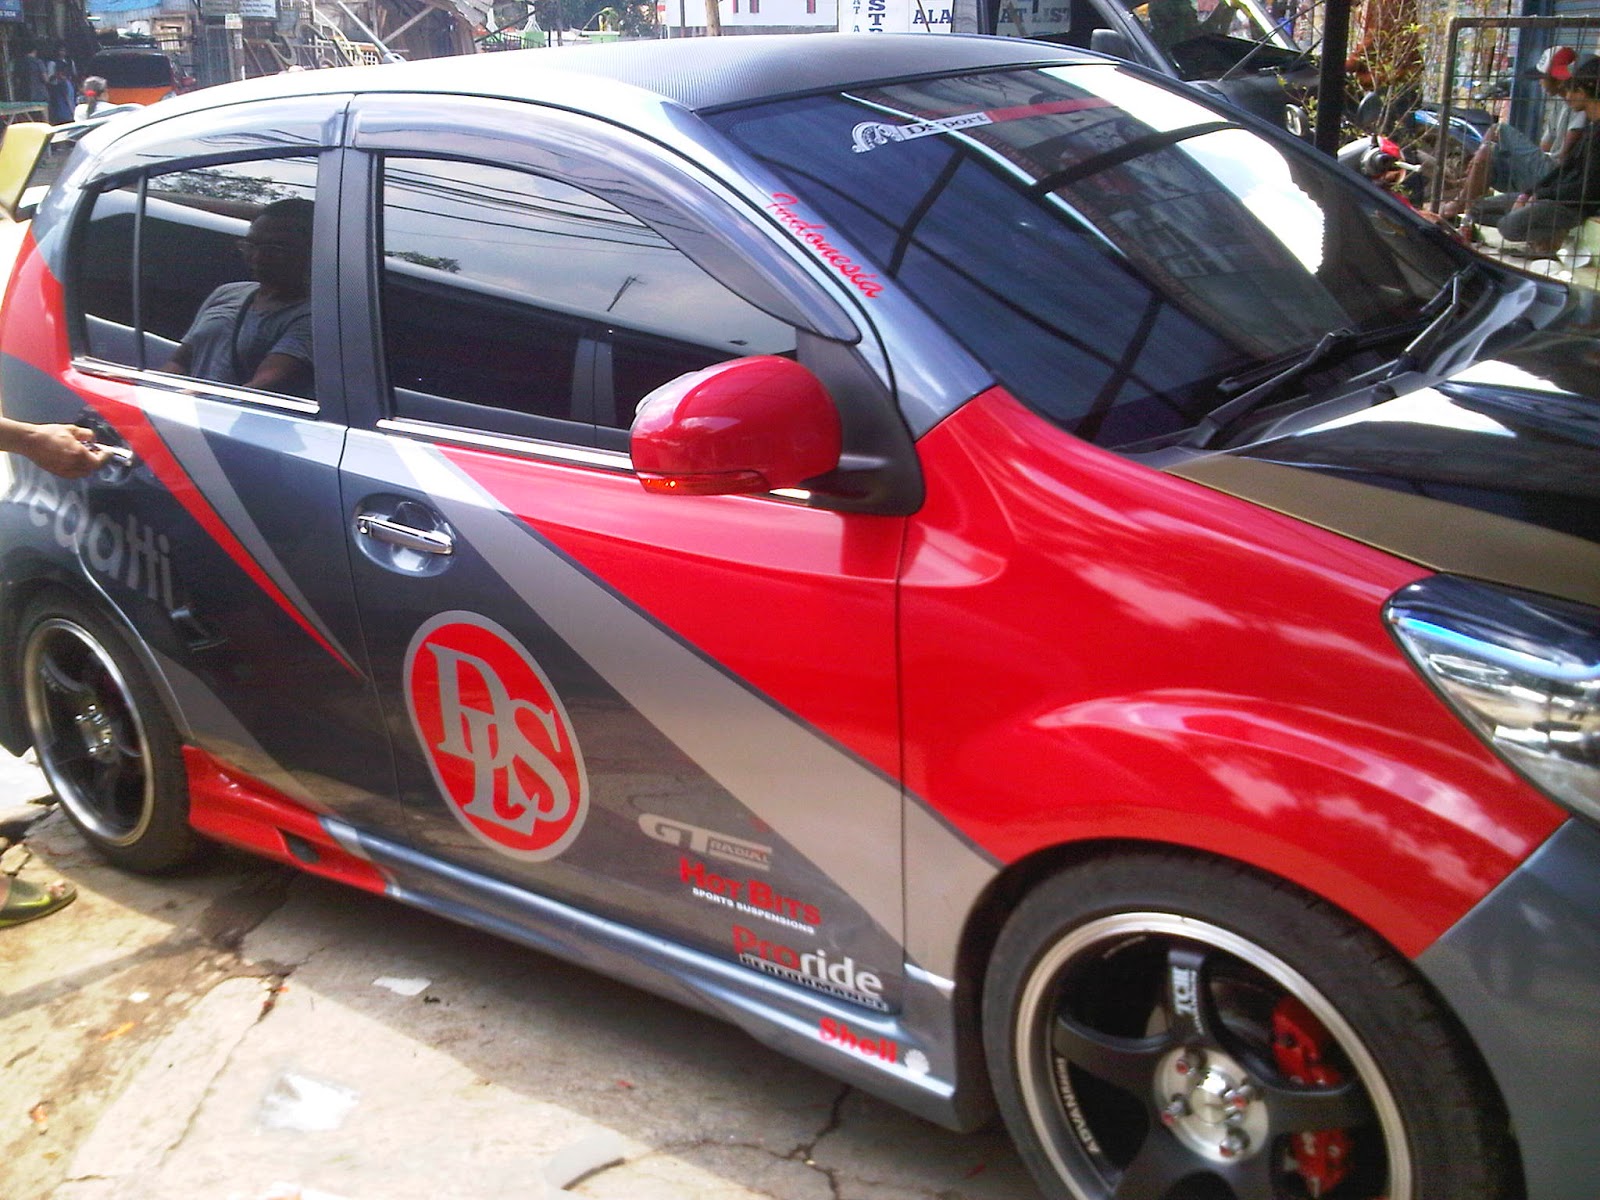 45 Koleksi Cutting Sticker Mobil Lampung Terlengkap Otomotif